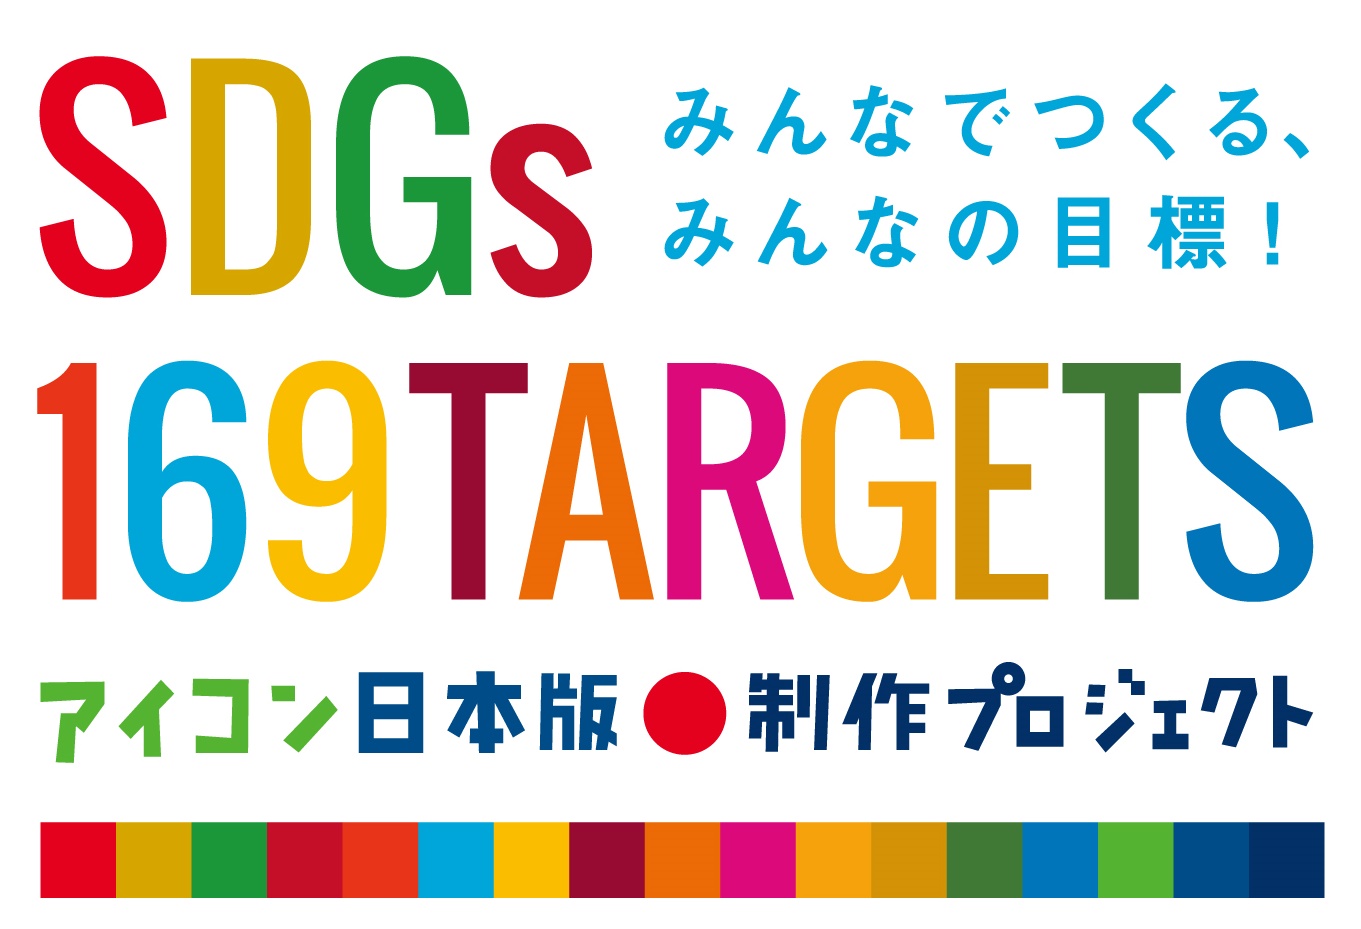 みんなでつくる みんなの目標 Sdgs169ターゲットアイコン日本版制作プロジェクト 日本 語コピーを募集する広告を掲載 株式会社朝日新聞社のプレスリリース